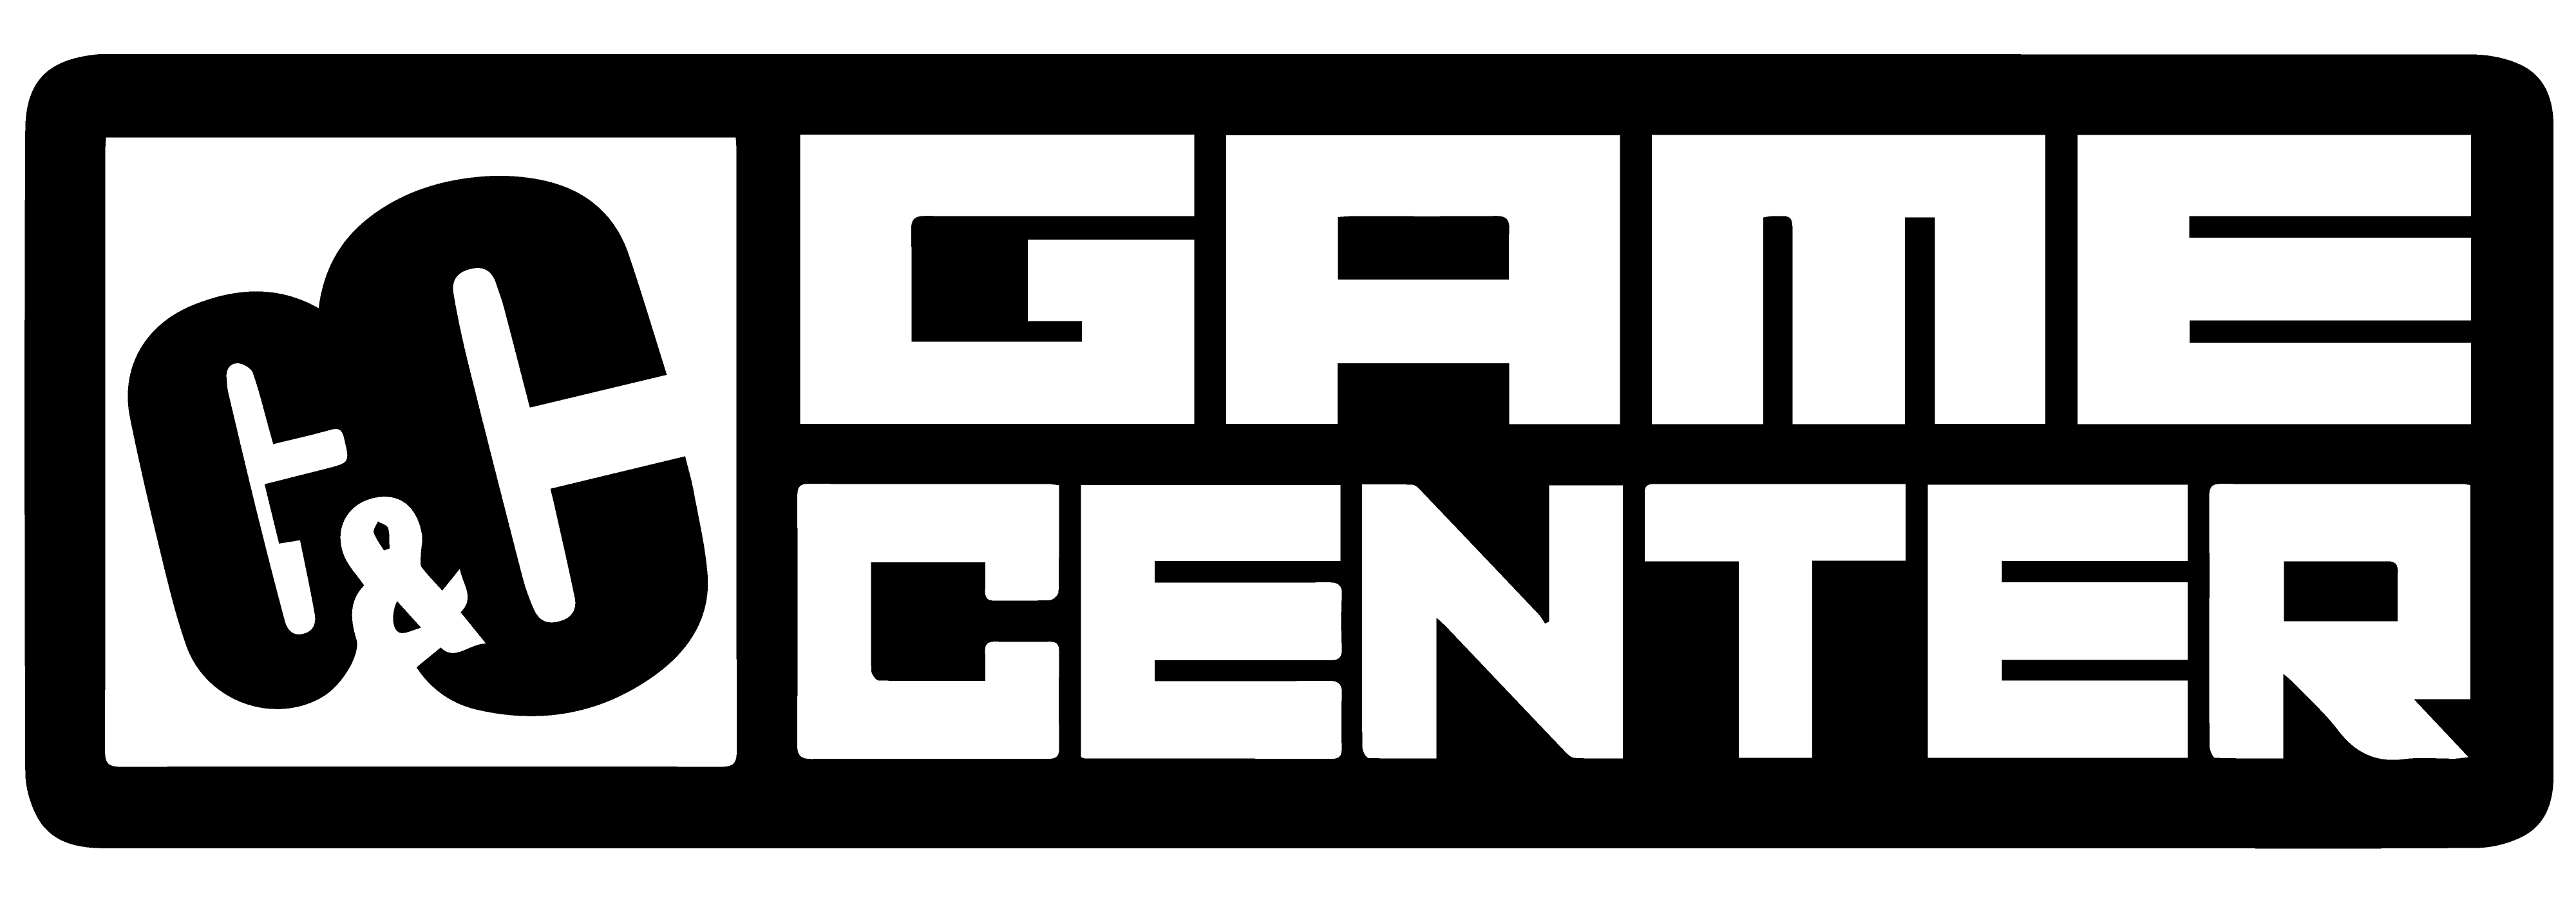 Tienda de videojuegos Gamecenter